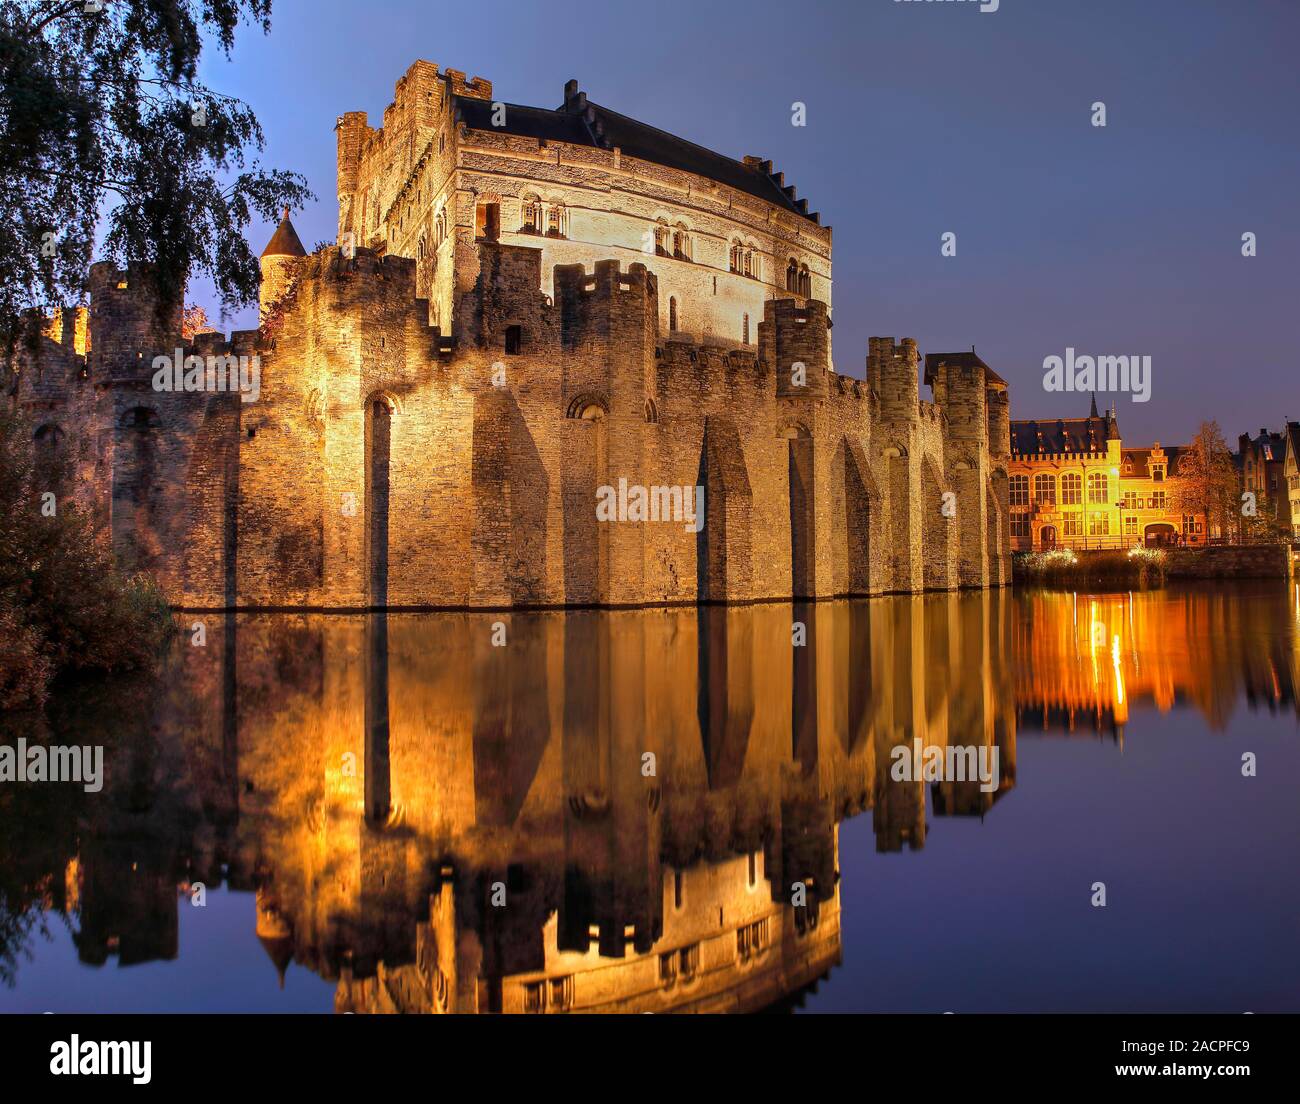 Castello illuminato Gravensteen al crepuscolo con acqua riflessione, moated castle, Gand, Fiandre, in Belgio Foto Stock